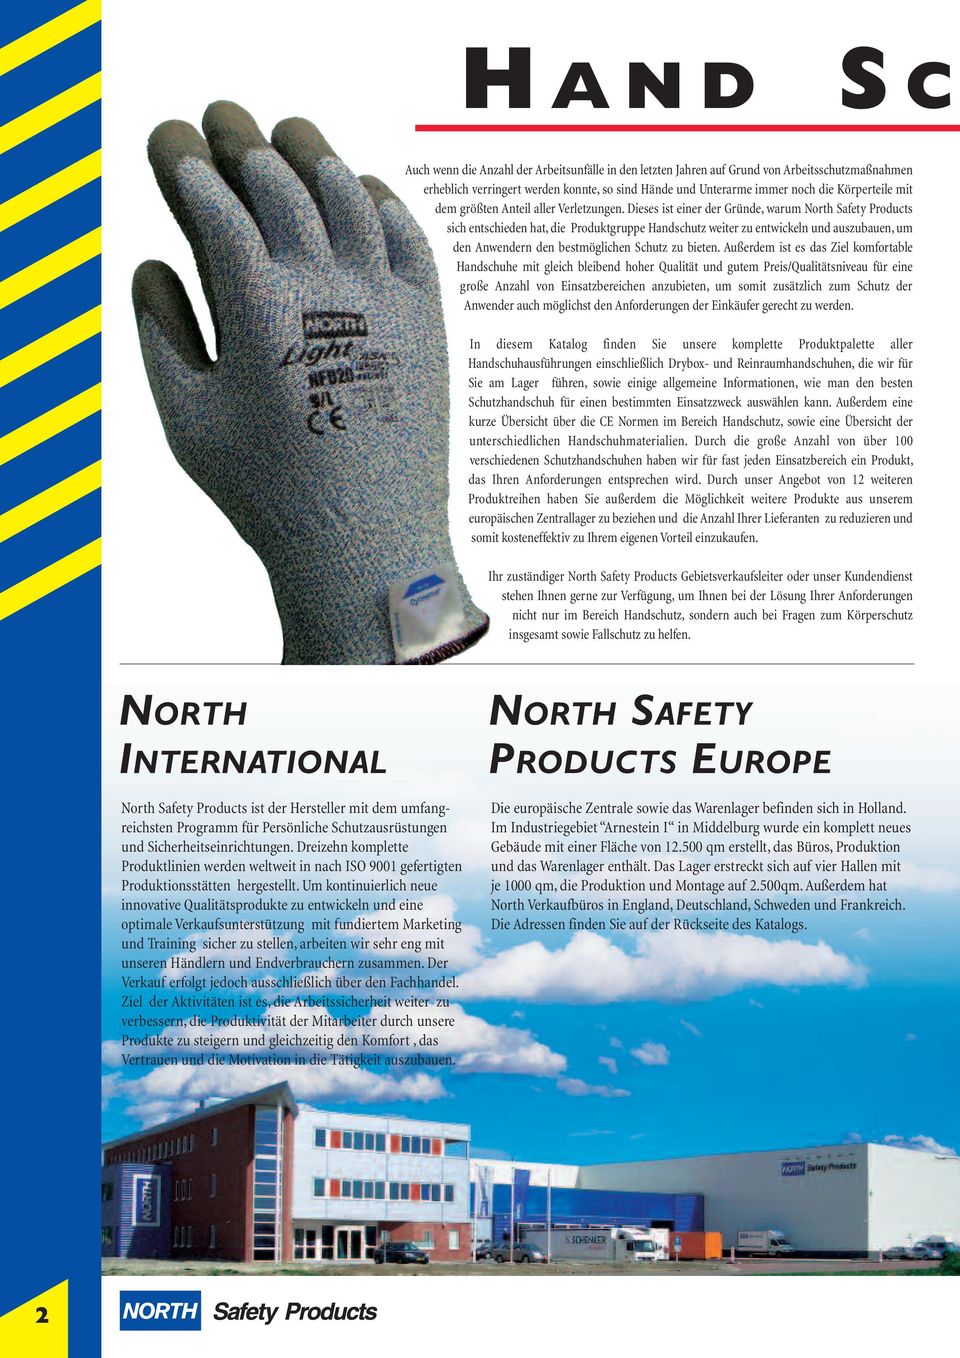 Dieses ist einer der Gründe, warum North Safety Products sich entschieden hat, die Produktgruppe Handschutz weiter zu entwickeln und auszubauen, um den Anwendern den bestmöglichen Schutz zu bieten.